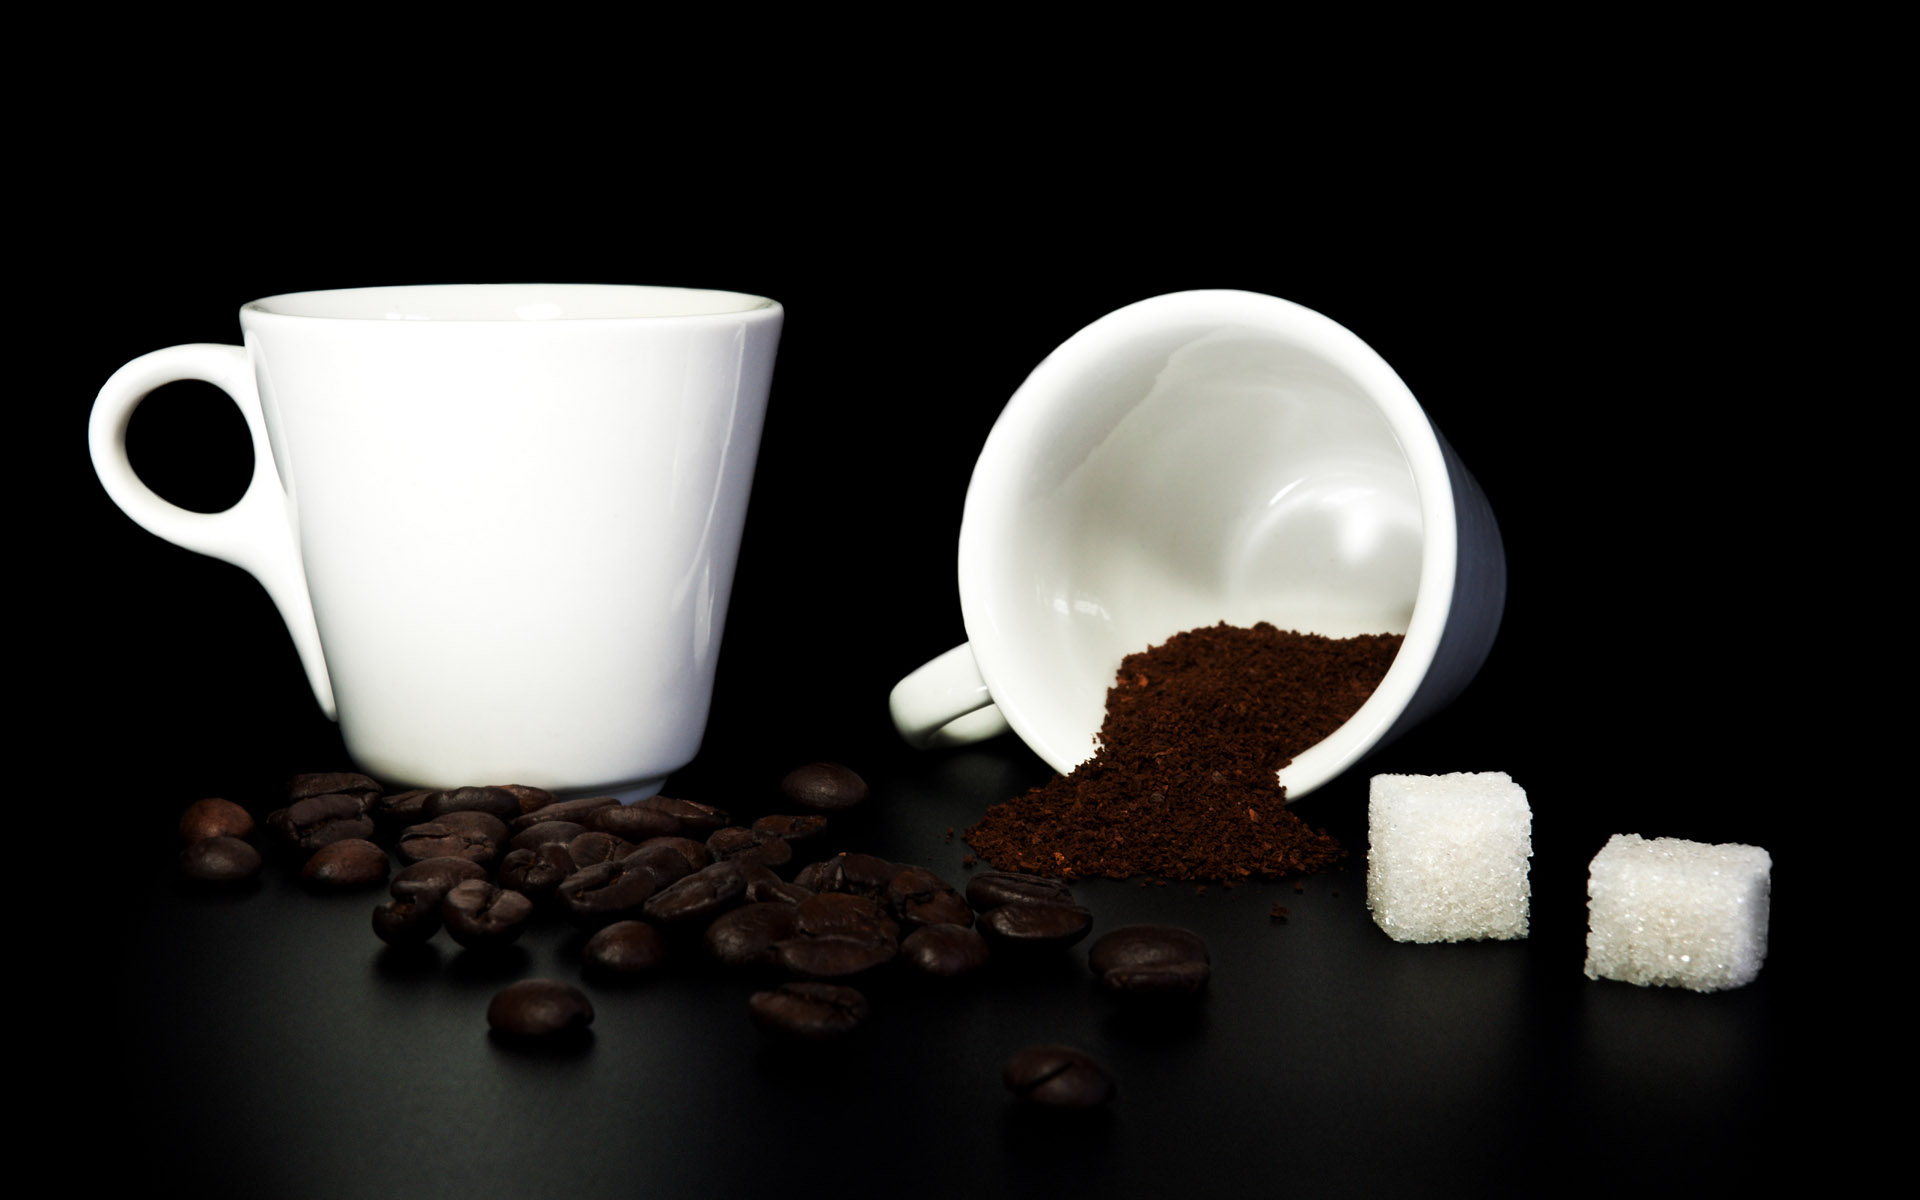 coffee, cups, objects, black background - desktop wallpaper